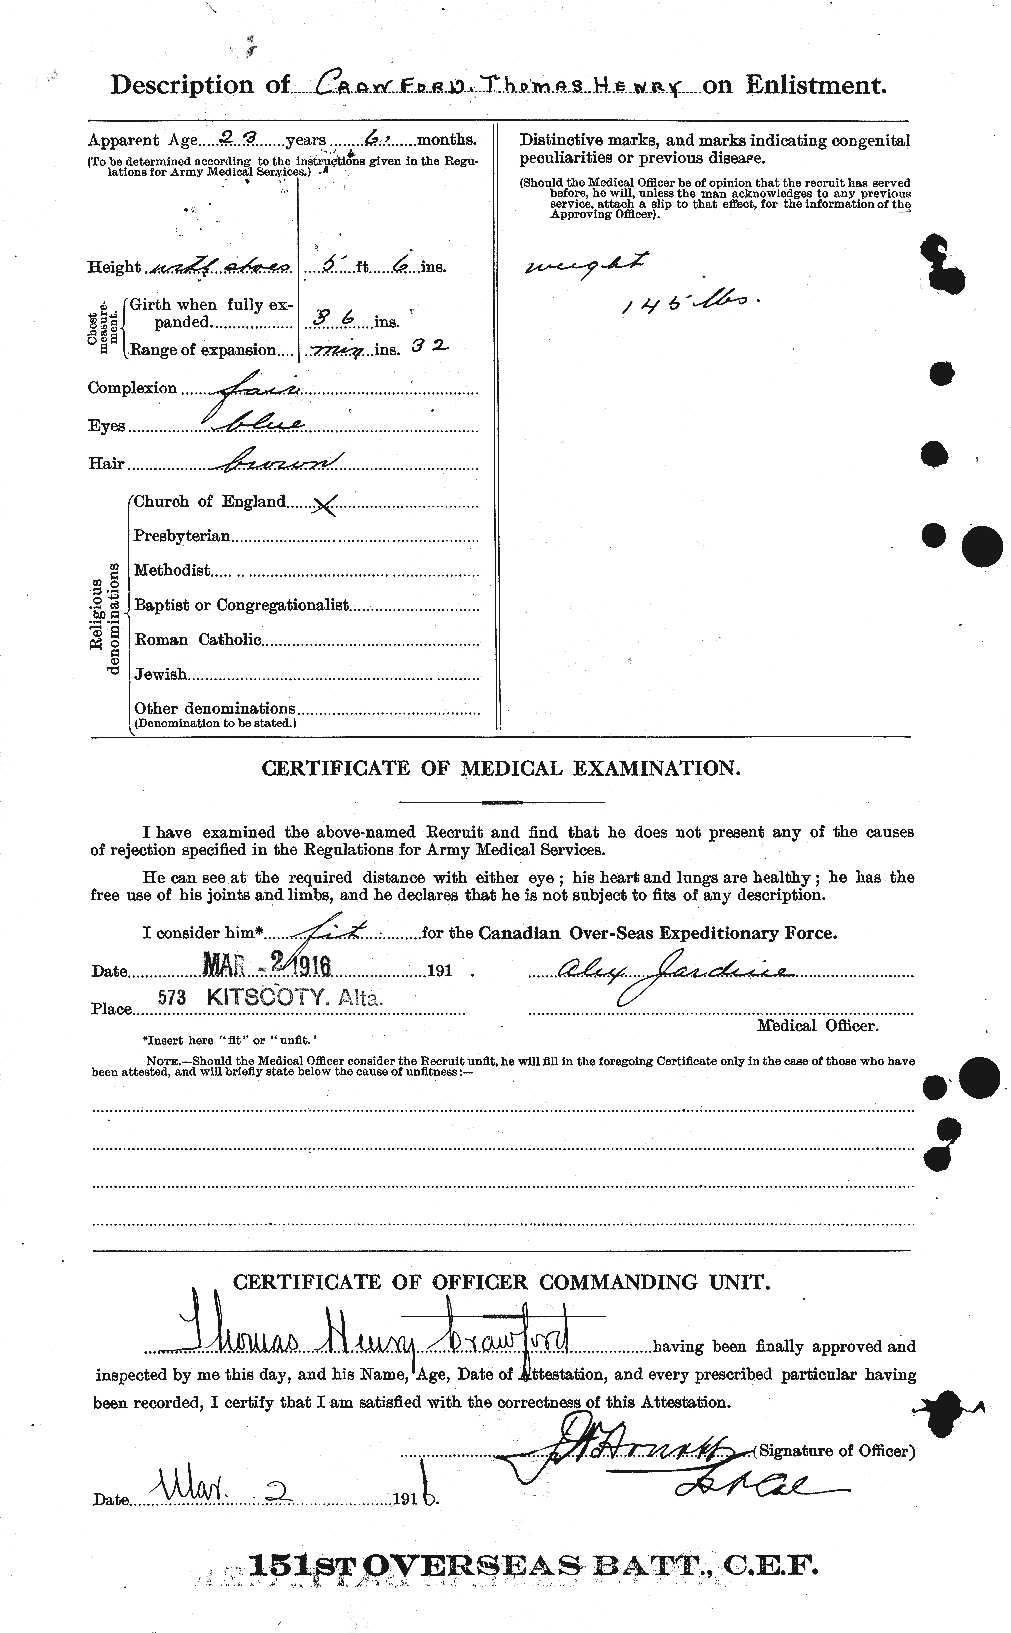 Dossiers du Personnel de la Première Guerre mondiale - CEC 061352b